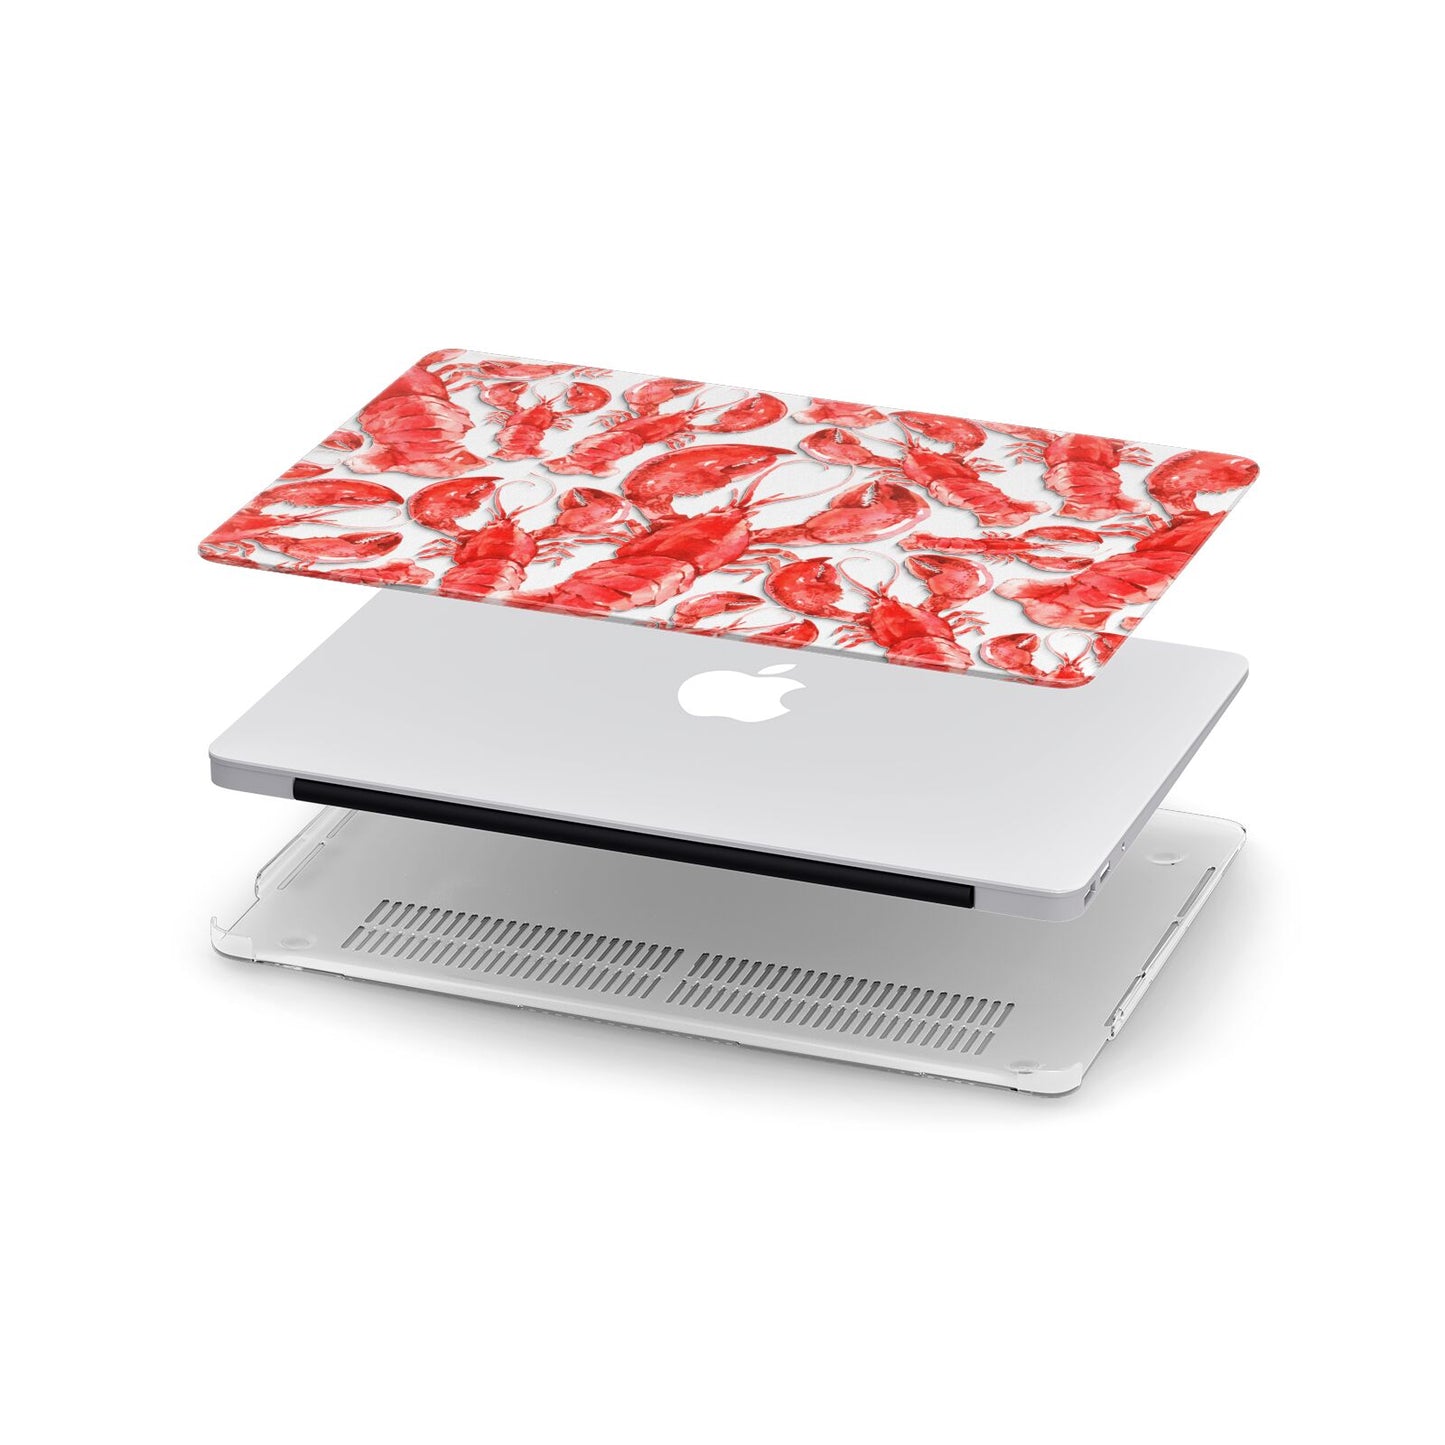 Lobster Apple MacBook Case in Detail